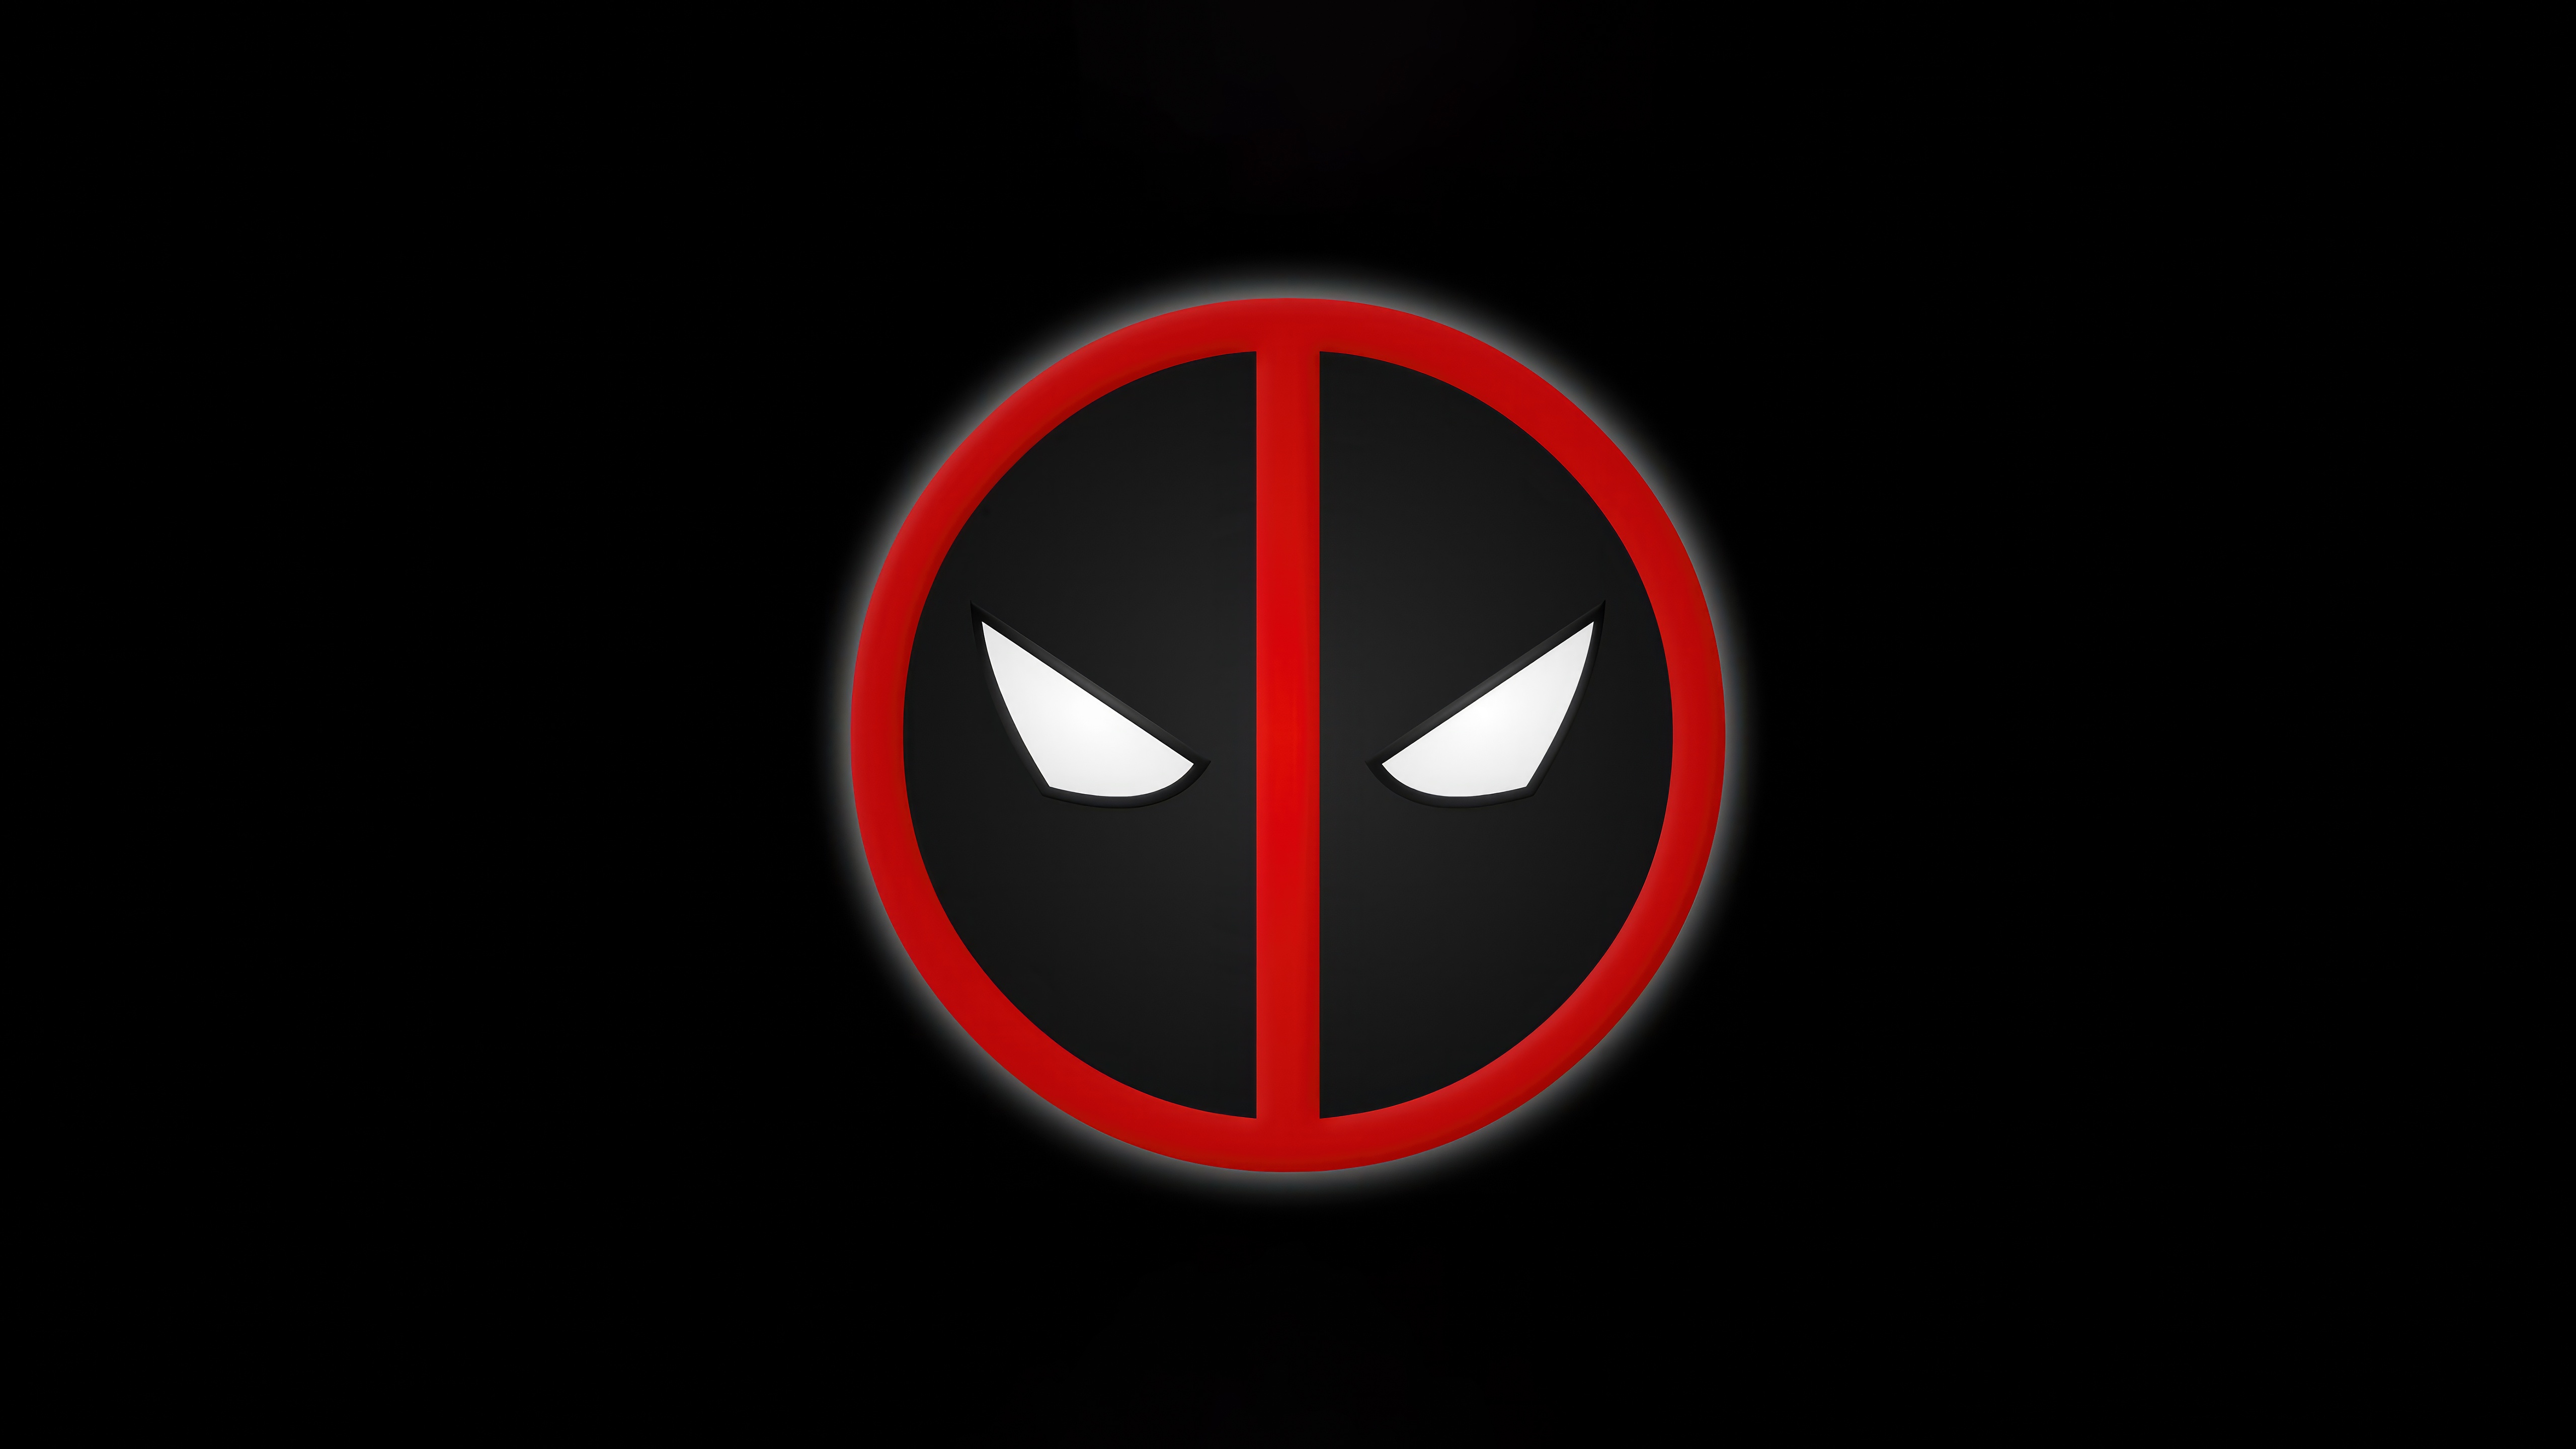 Fondos de pantalla Deadpool logo minimalista